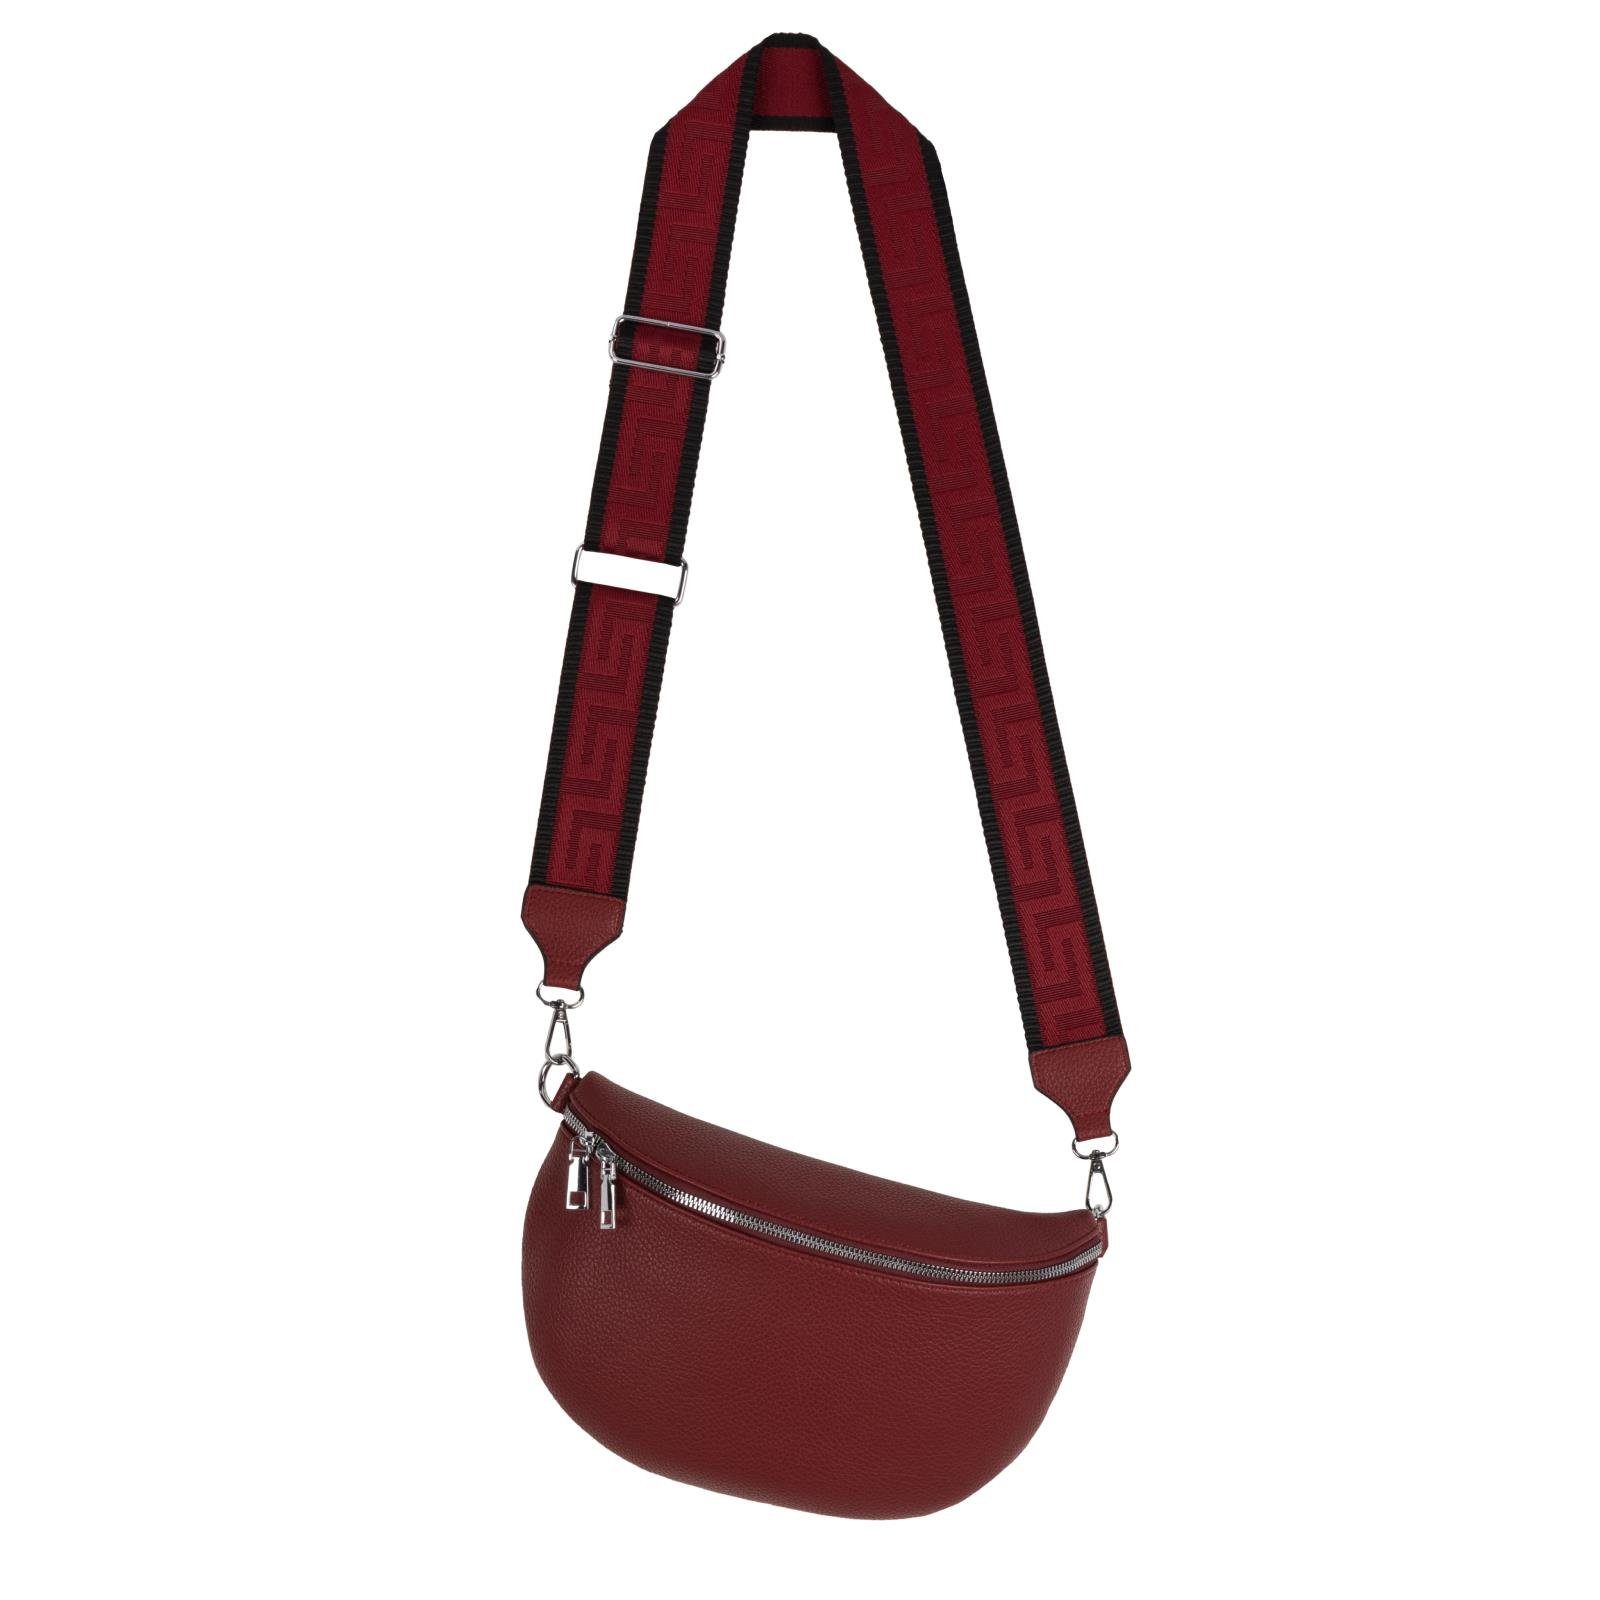 EAAKIE Gürteltasche Bauchtasche XL Umhängetasche Crossbody-Bag Hüfttasche Kunstleder Italy, als Schultertasche, CrossOver, Umhängetasche tragbar PURPLE-RED